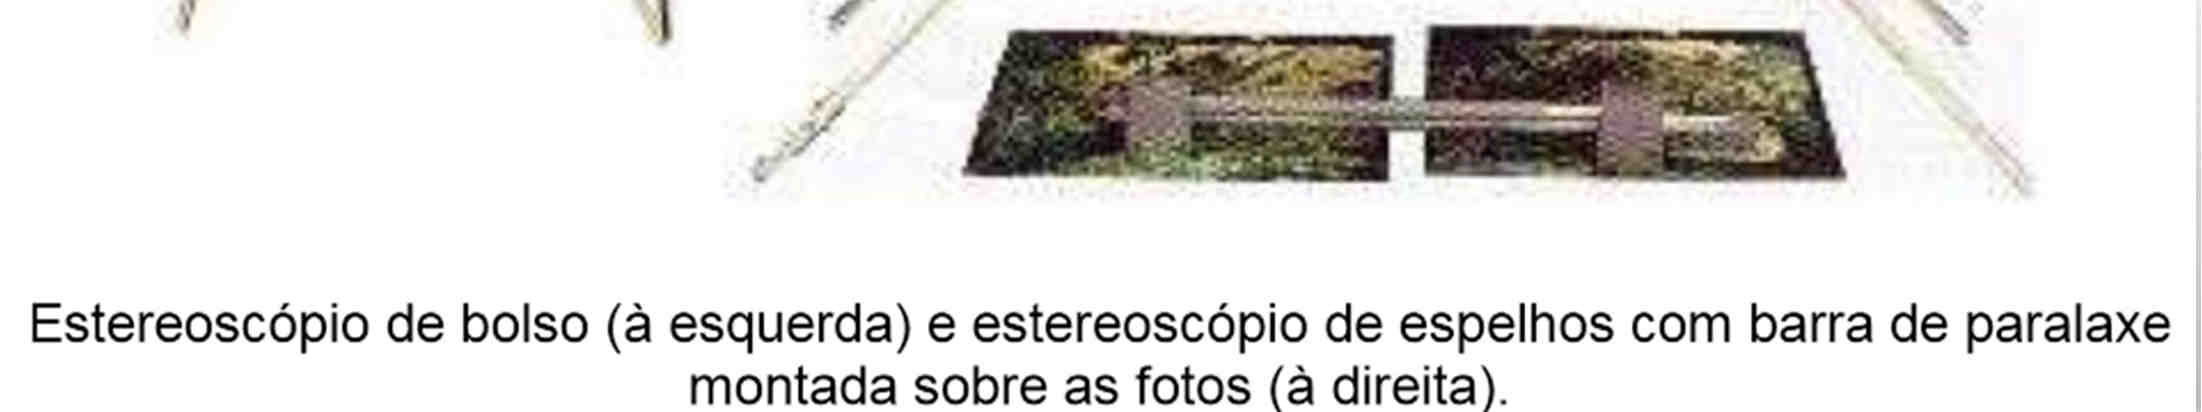 Estereoscópios São instrumentos ópticos que permitem examinar as fotografias em três dimensões.